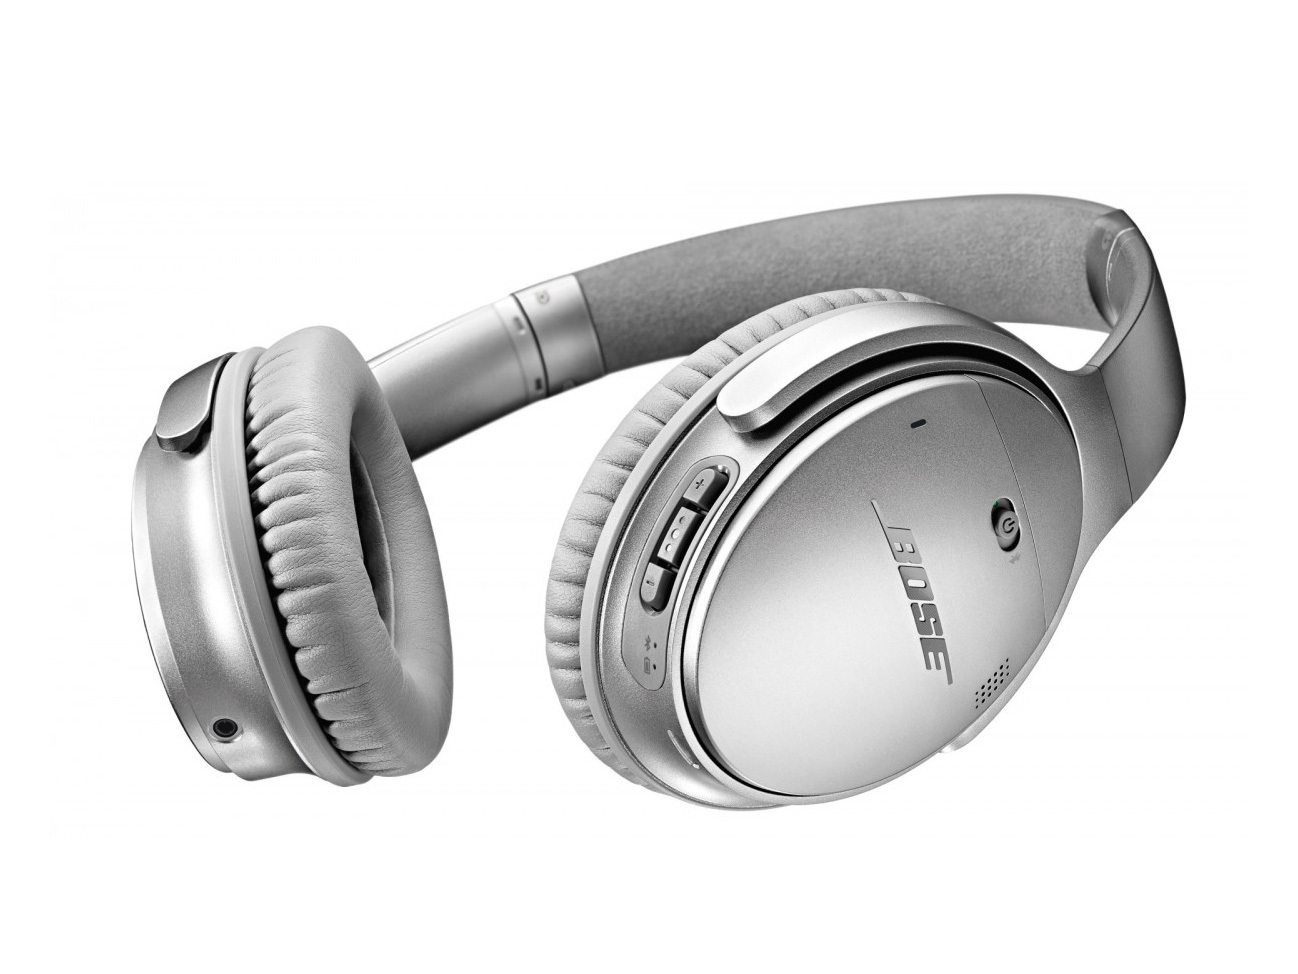 Bose QuietComfort 35 headphones (£290)